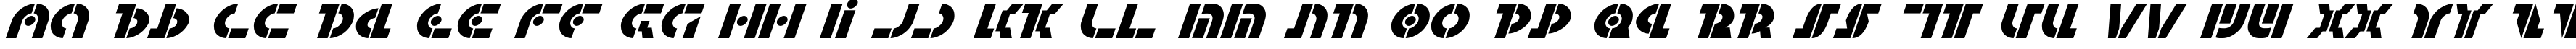 Пример написания английского алфавита шрифтом Questlok Italic